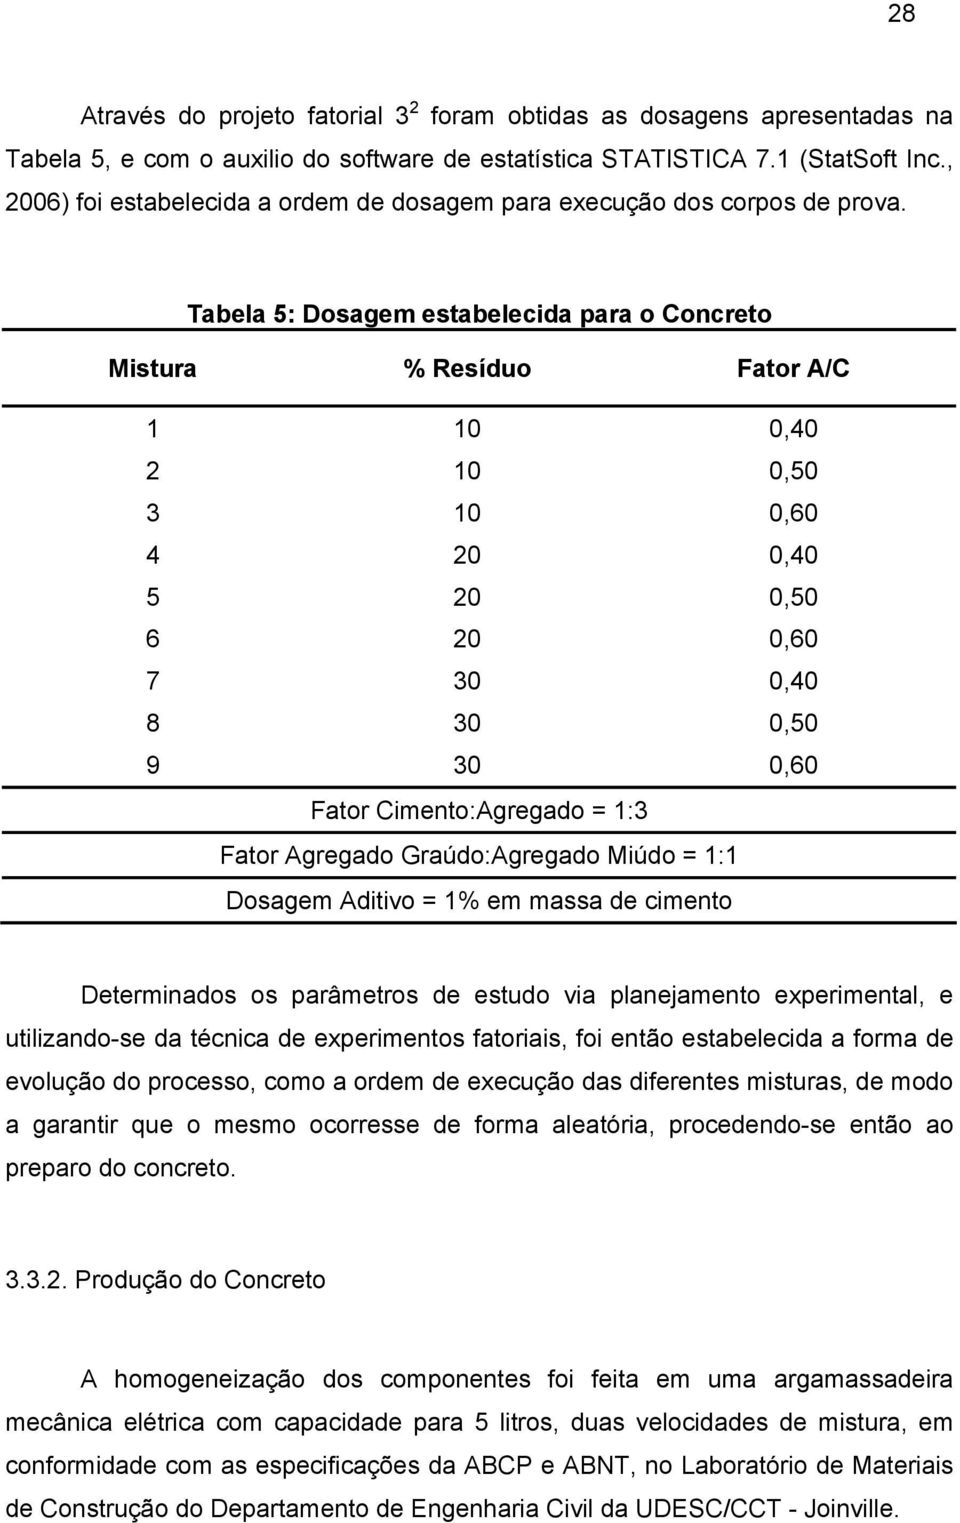 Tabela 5: Dosagem estabelecida para o Concreto Mistura % Resíduo Fator A/C 1 10 0,40 2 10 0,50 3 10 0,60 4 20 0,40 5 20 0,50 6 20 0,60 7 30 0,40 8 30 0,50 9 30 0,60 Fator Cimento:Agregado = 1:3 Fator